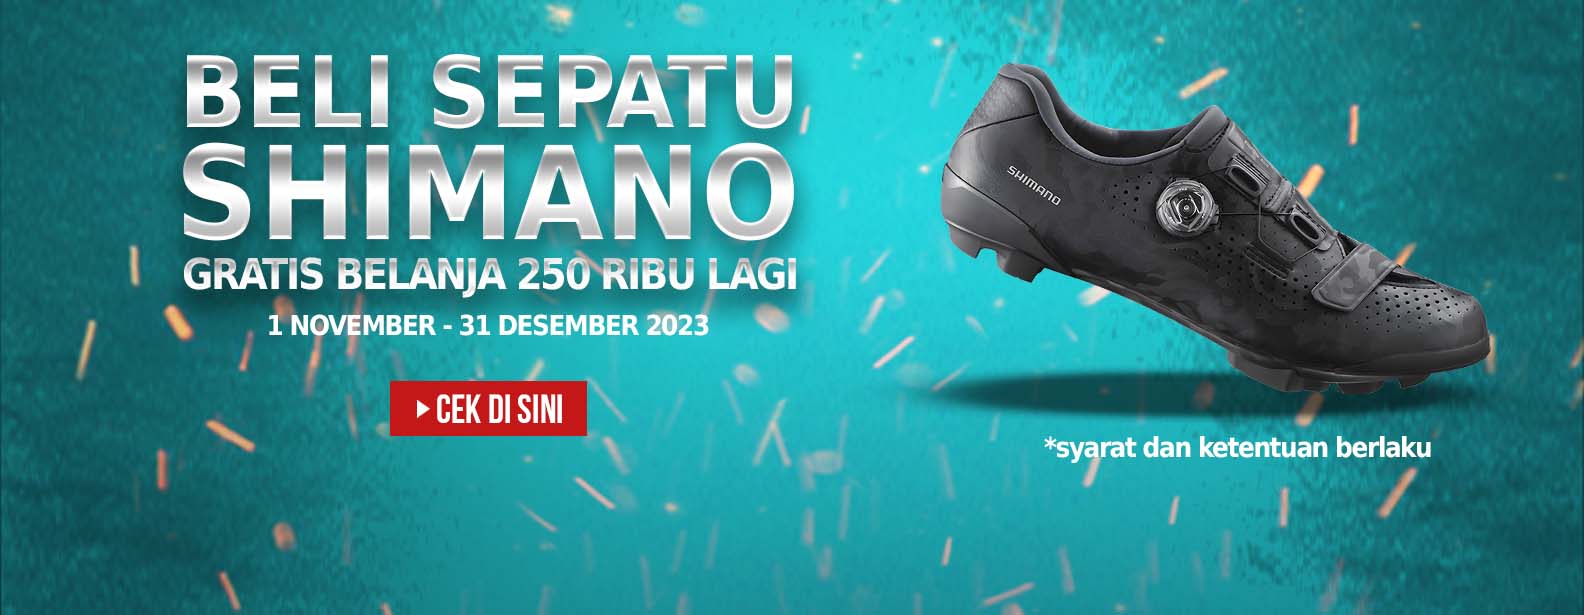 Beli Sepatu Shimano Dapat Gratis Belanja Rp 250ribu!